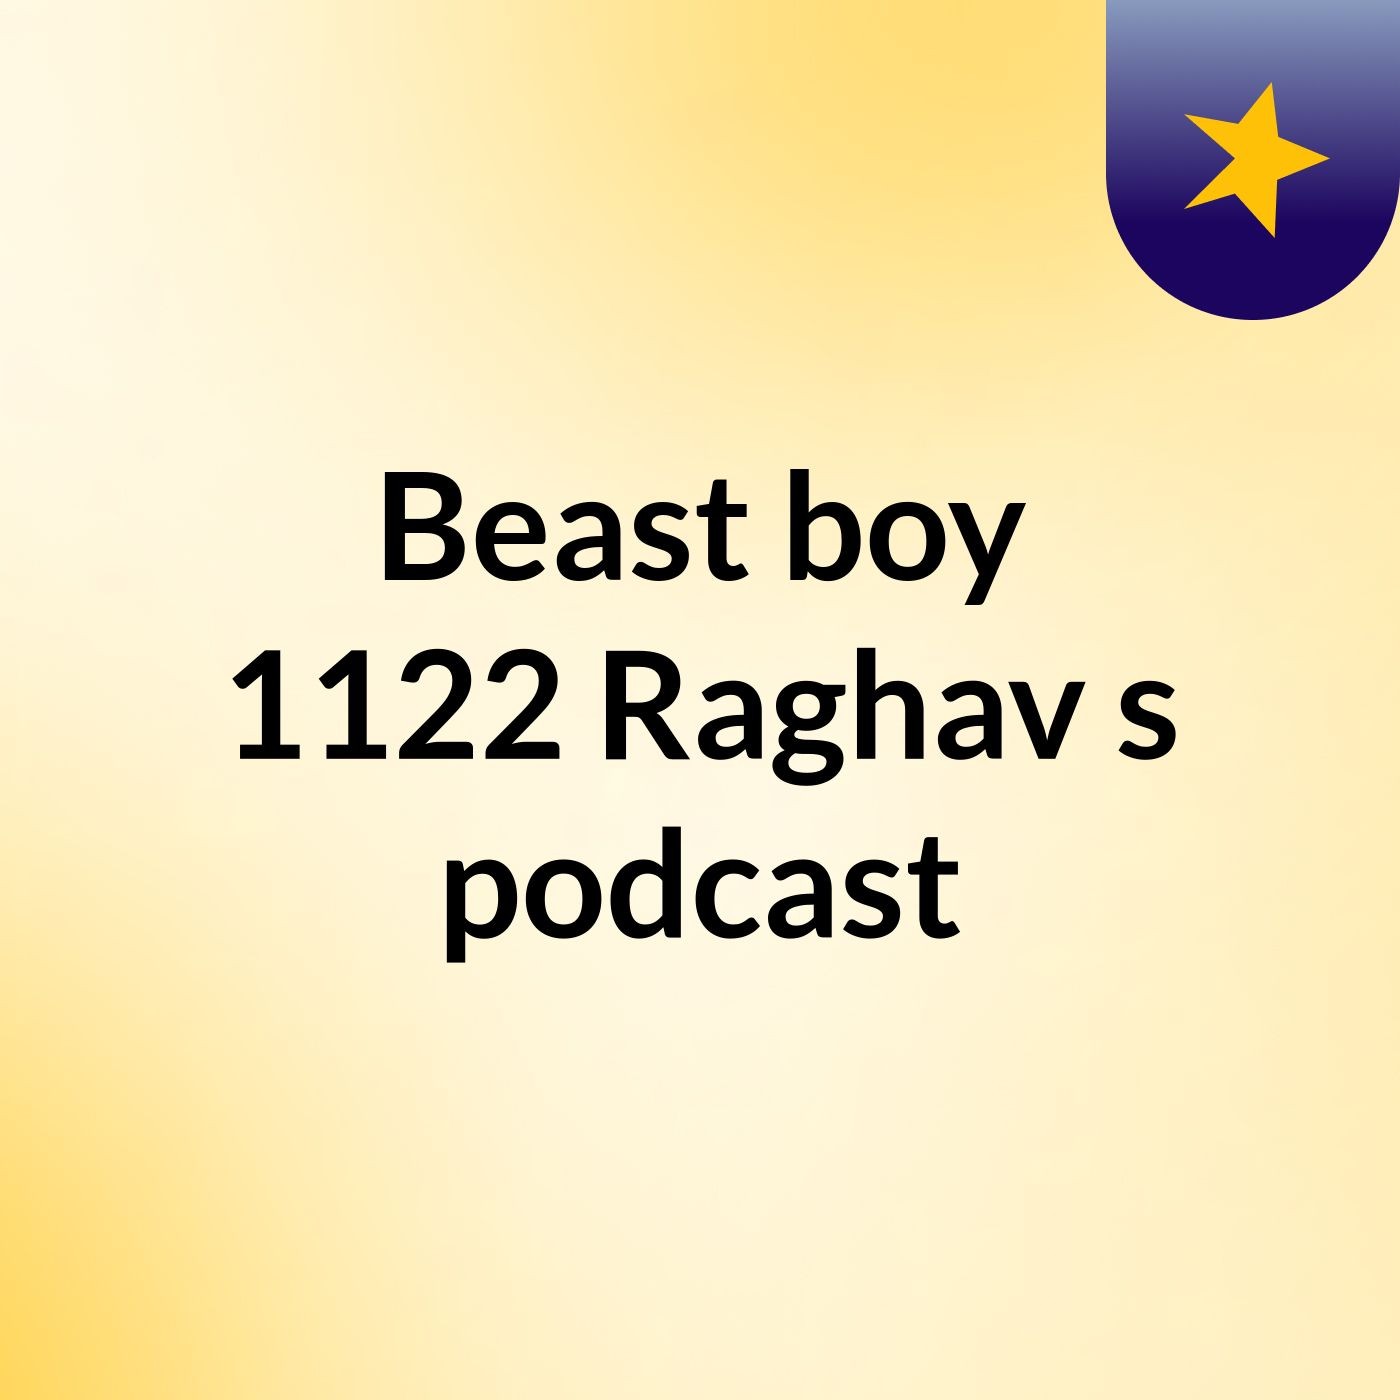 Beast boy 1122 Raghav's podcast